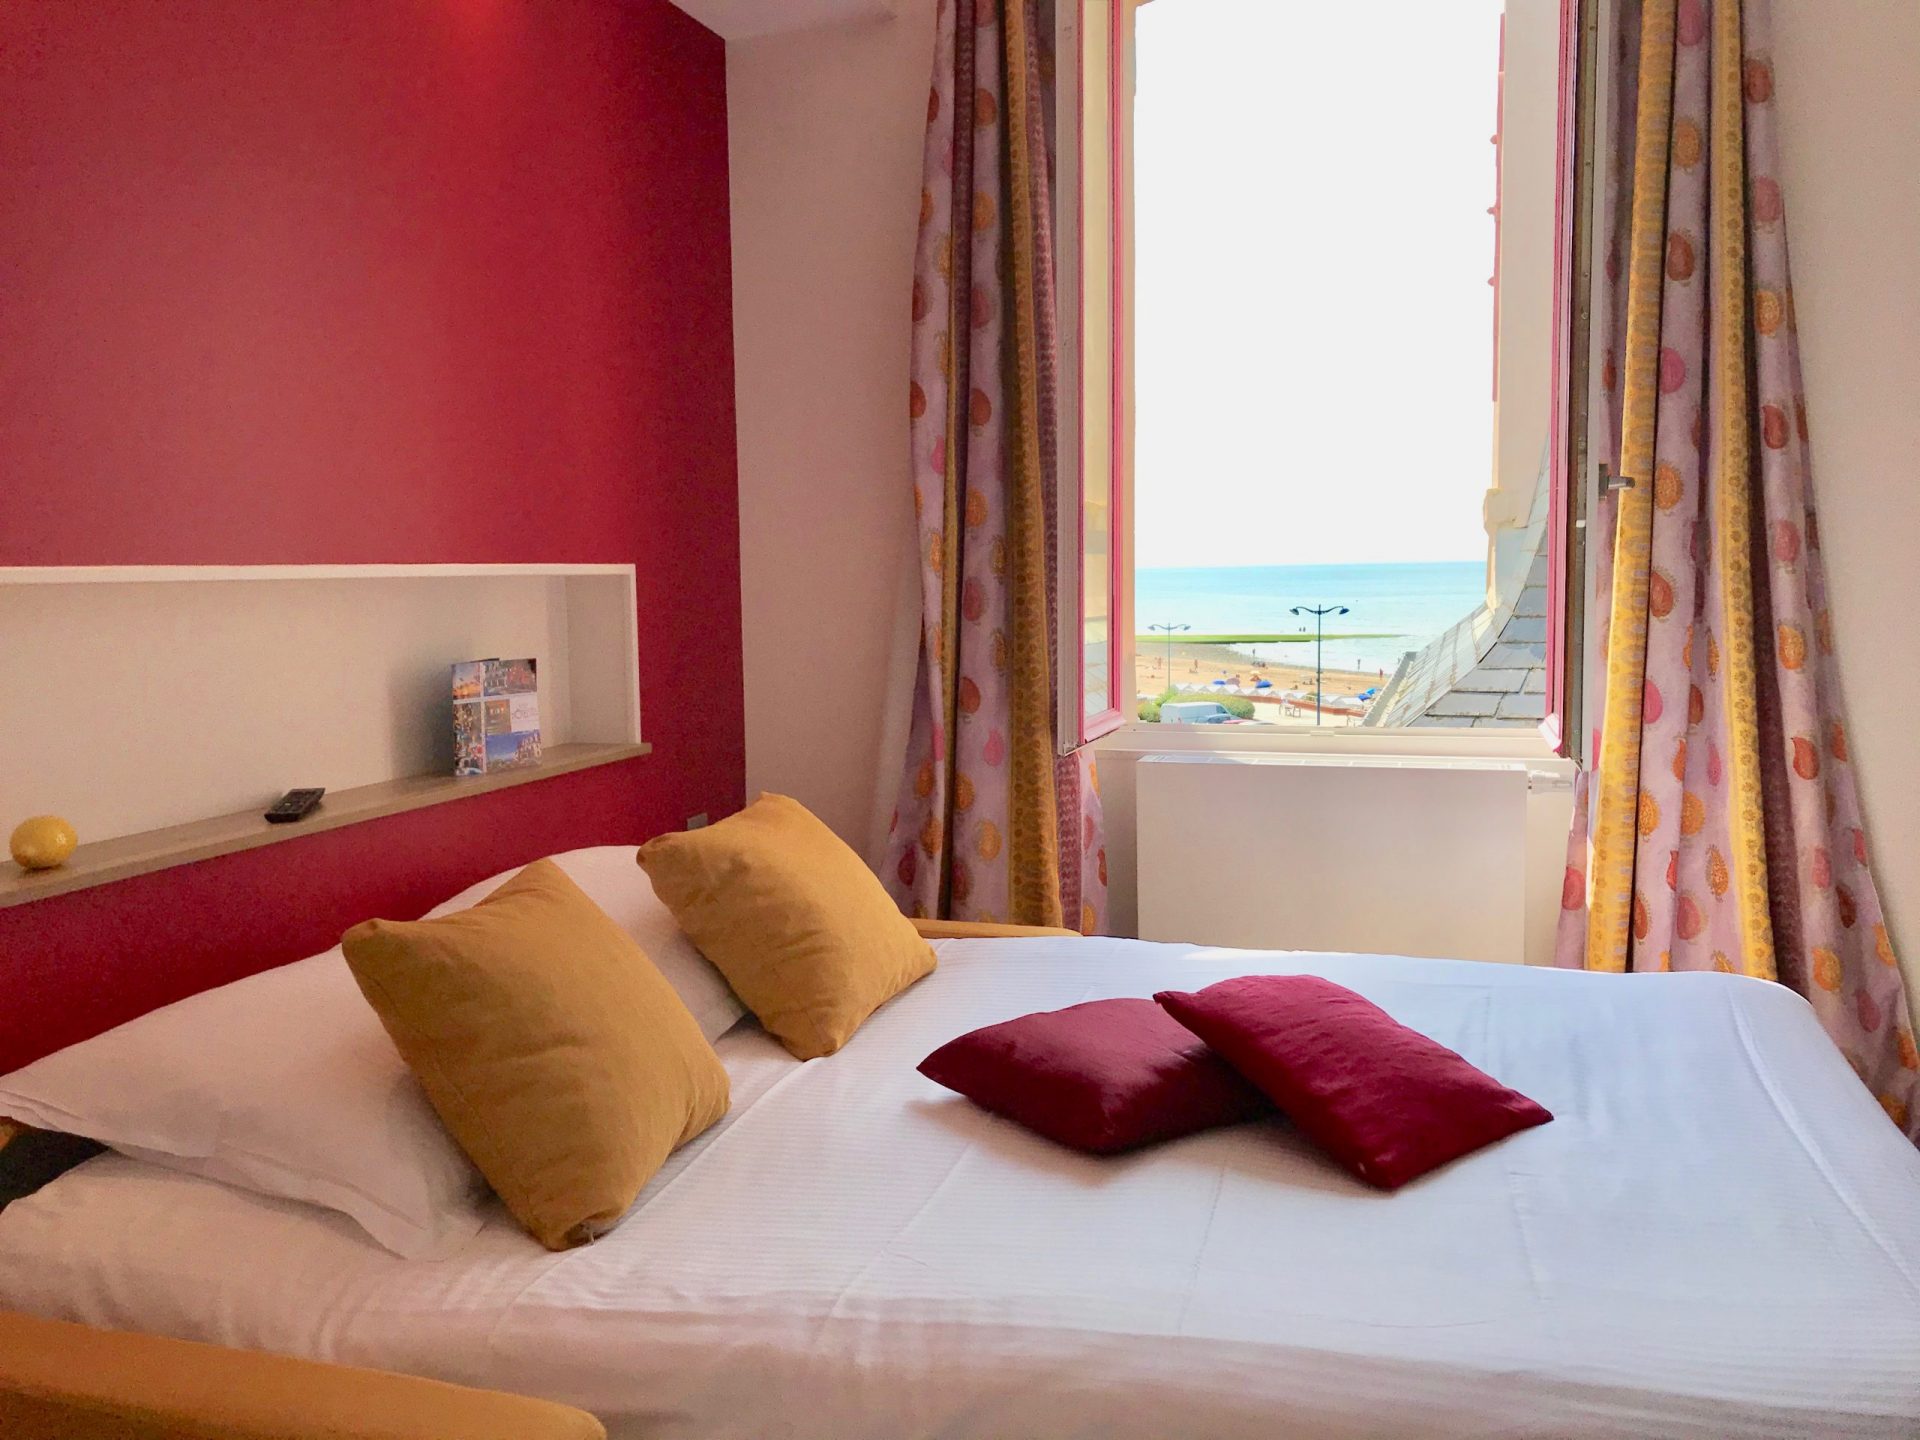 Hôtel Outre-Mer (Villa Le couchant) - Suite familiale Cabourg mon amour vue sur mer